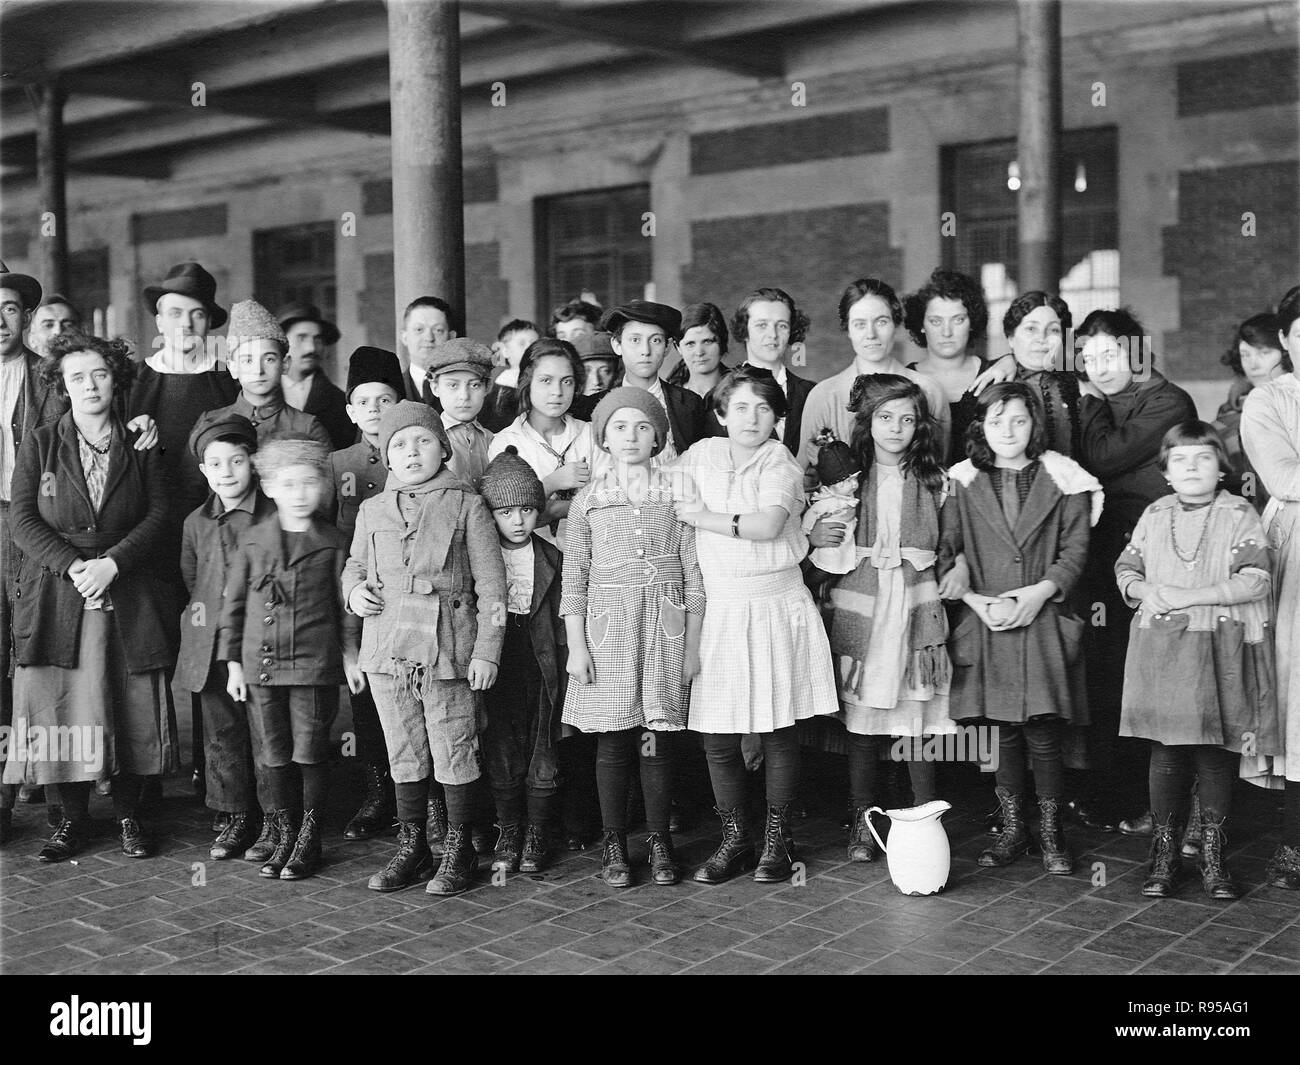 Kinder mit Migrationshintergrund, Ellis Island, New York. Foto: Braune Brüder, Ca. 1908. Aus den Aufzeichnungen des United States Public Health Service. Stockfoto